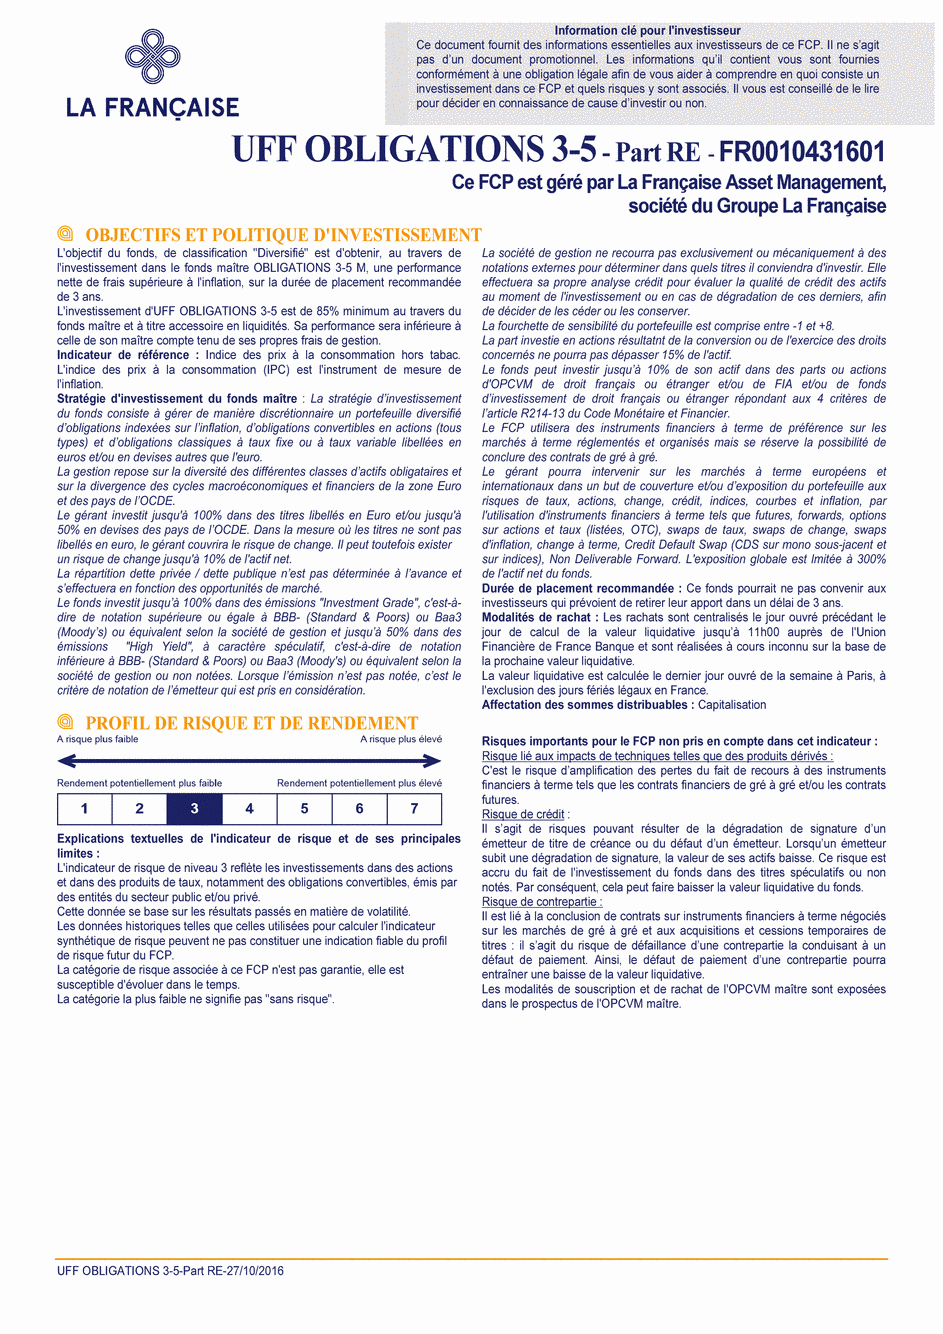 DICI UFF Obligations 3-5 (Part RE) - 27/10/2016 - Français